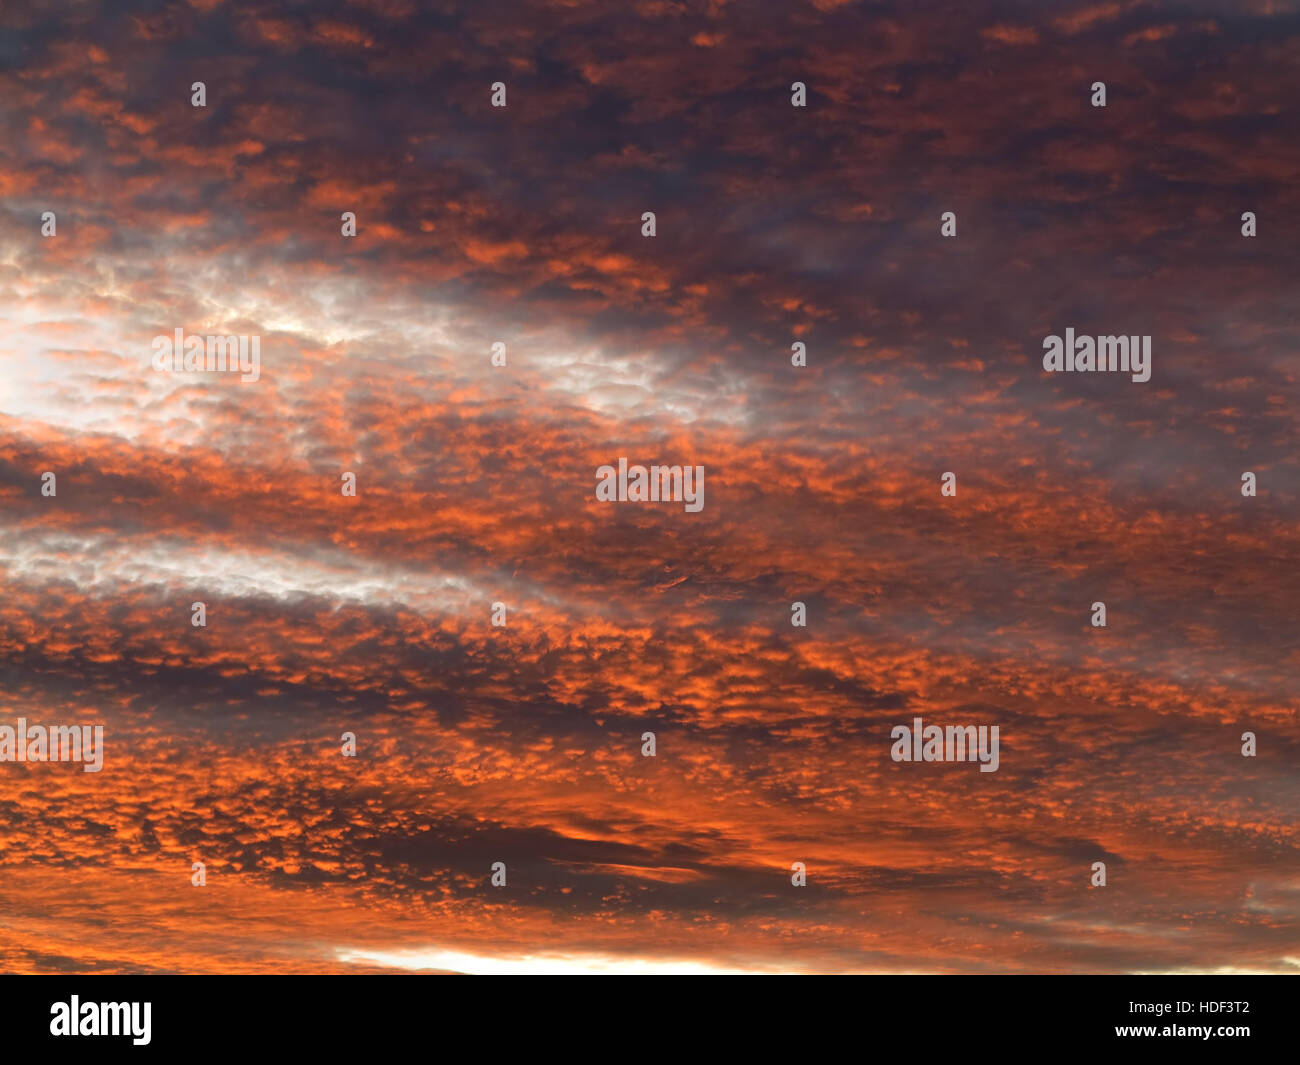 Ciel rouge au crépuscule - image de l'ciel rose - gloaming - coucher de soleil couleurs Banque D'Images